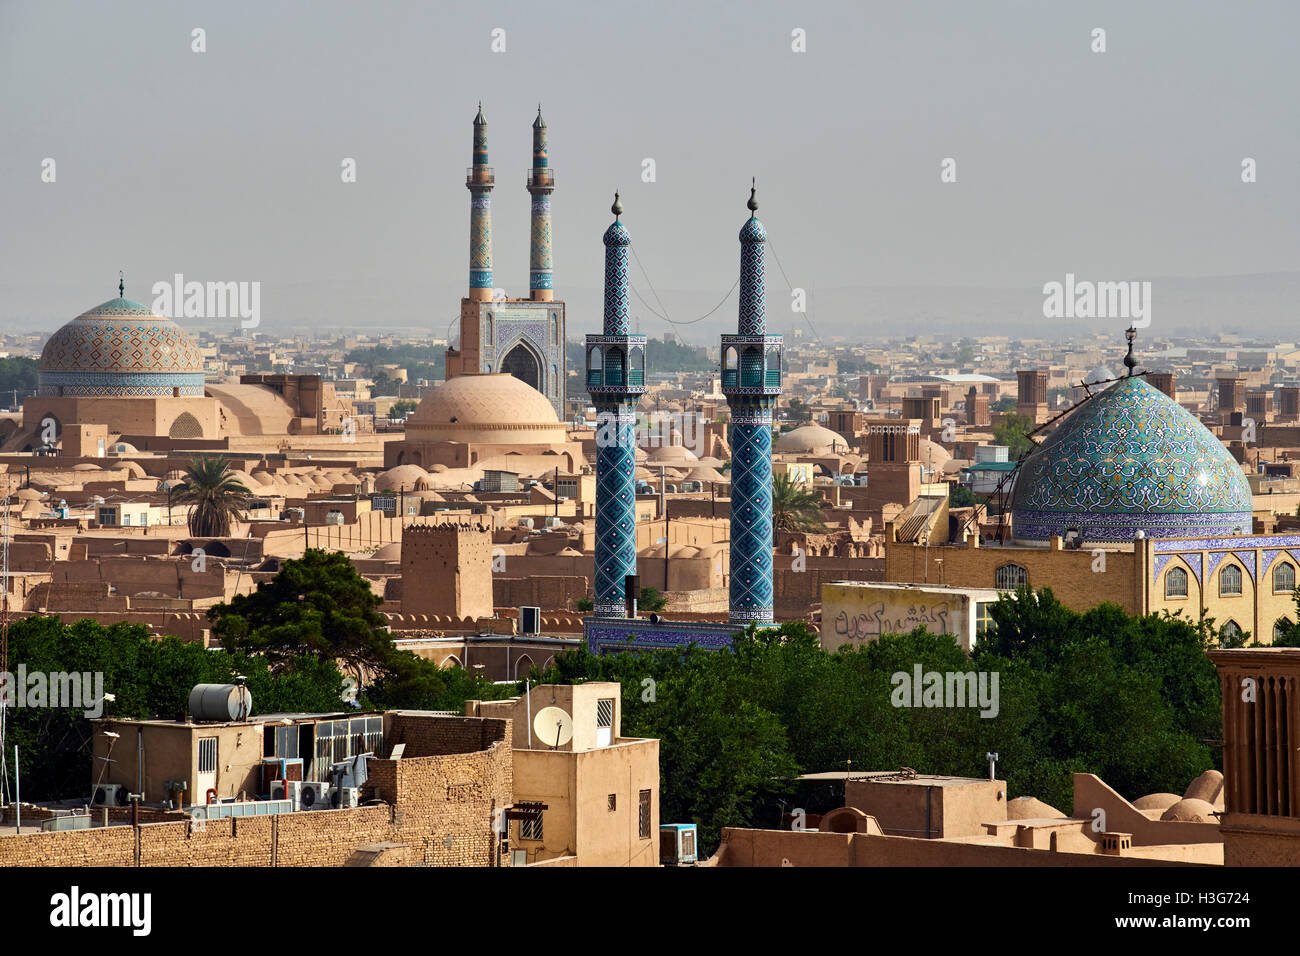 La province de Yazd, Iran, Yazd, mosquée de vendredi, paysage urbain, badgirs ou tours à vent Banque D'Images